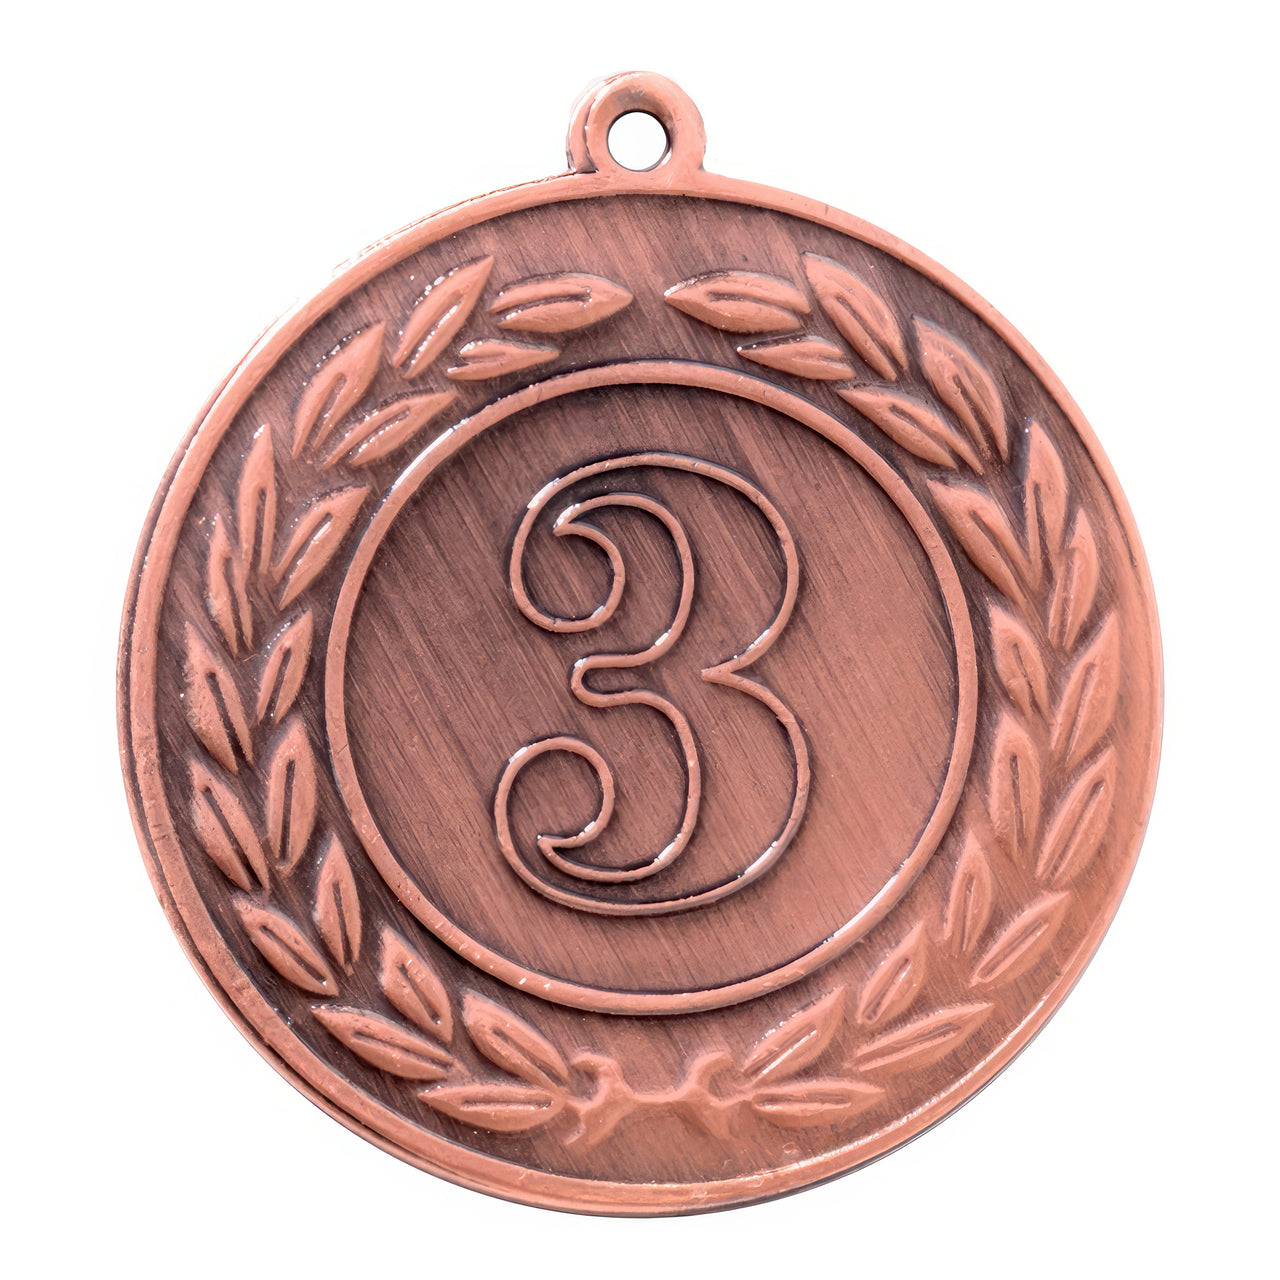 Die Medaillen Essen 40 mm PK79216 ist eine aus hochwertigem Material gefertigte Bronzemedaille mit einer großen Zahl „3“ in der Mitte, umgeben von einem exklusiven Lorbeerkranzdesign.